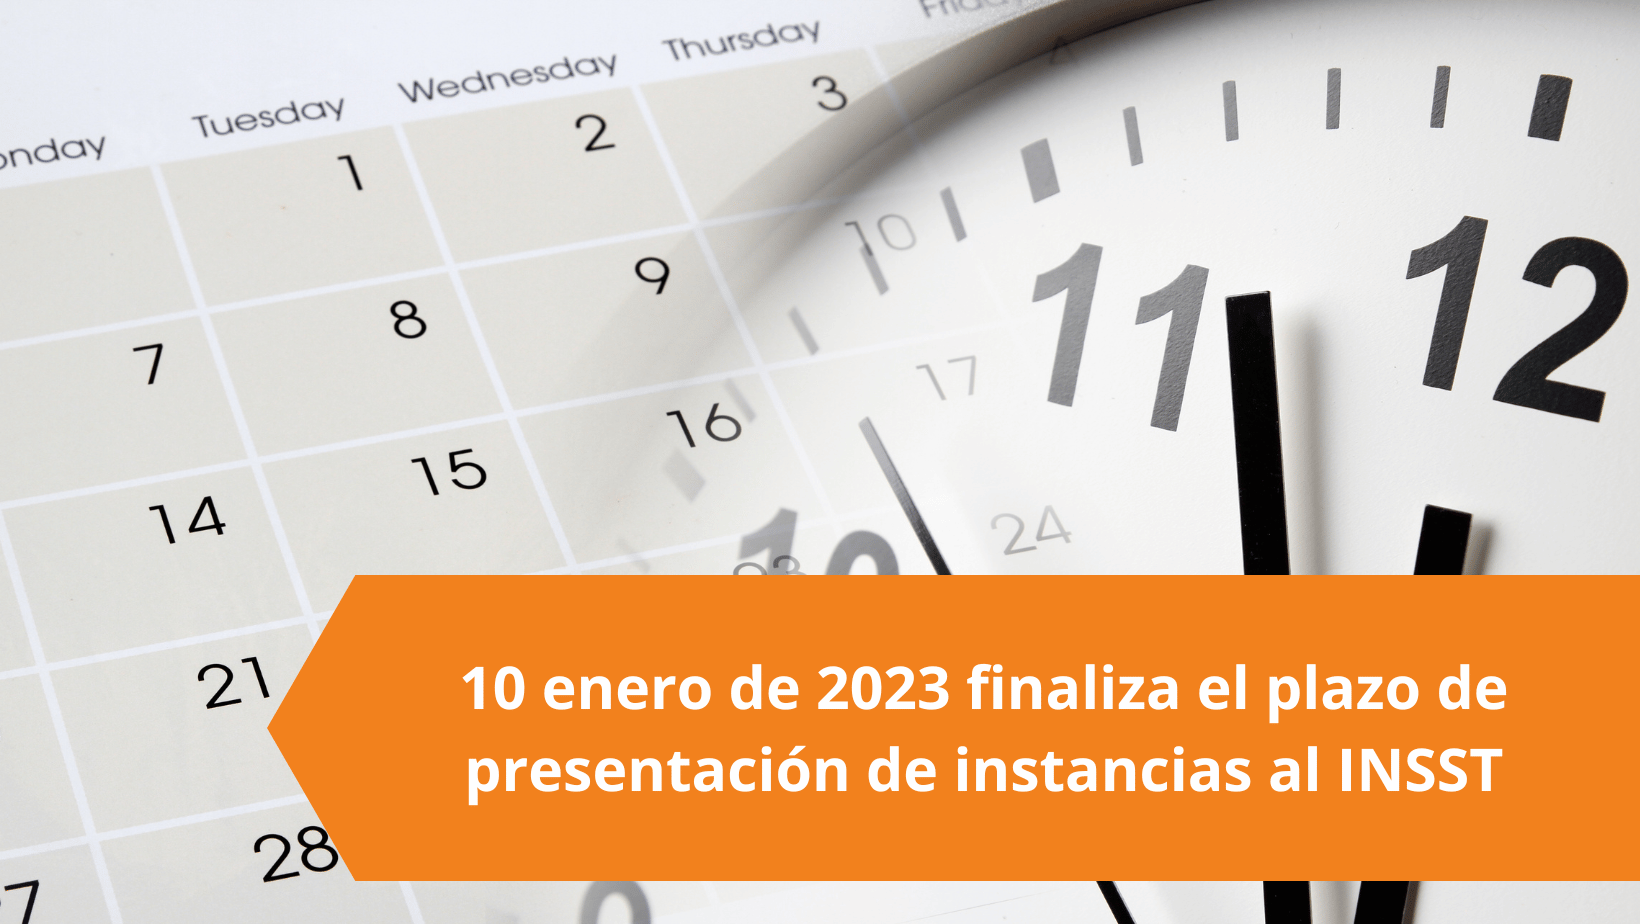 10 enero de 2023 finaliza el plazo de presentación de instancias al INSST